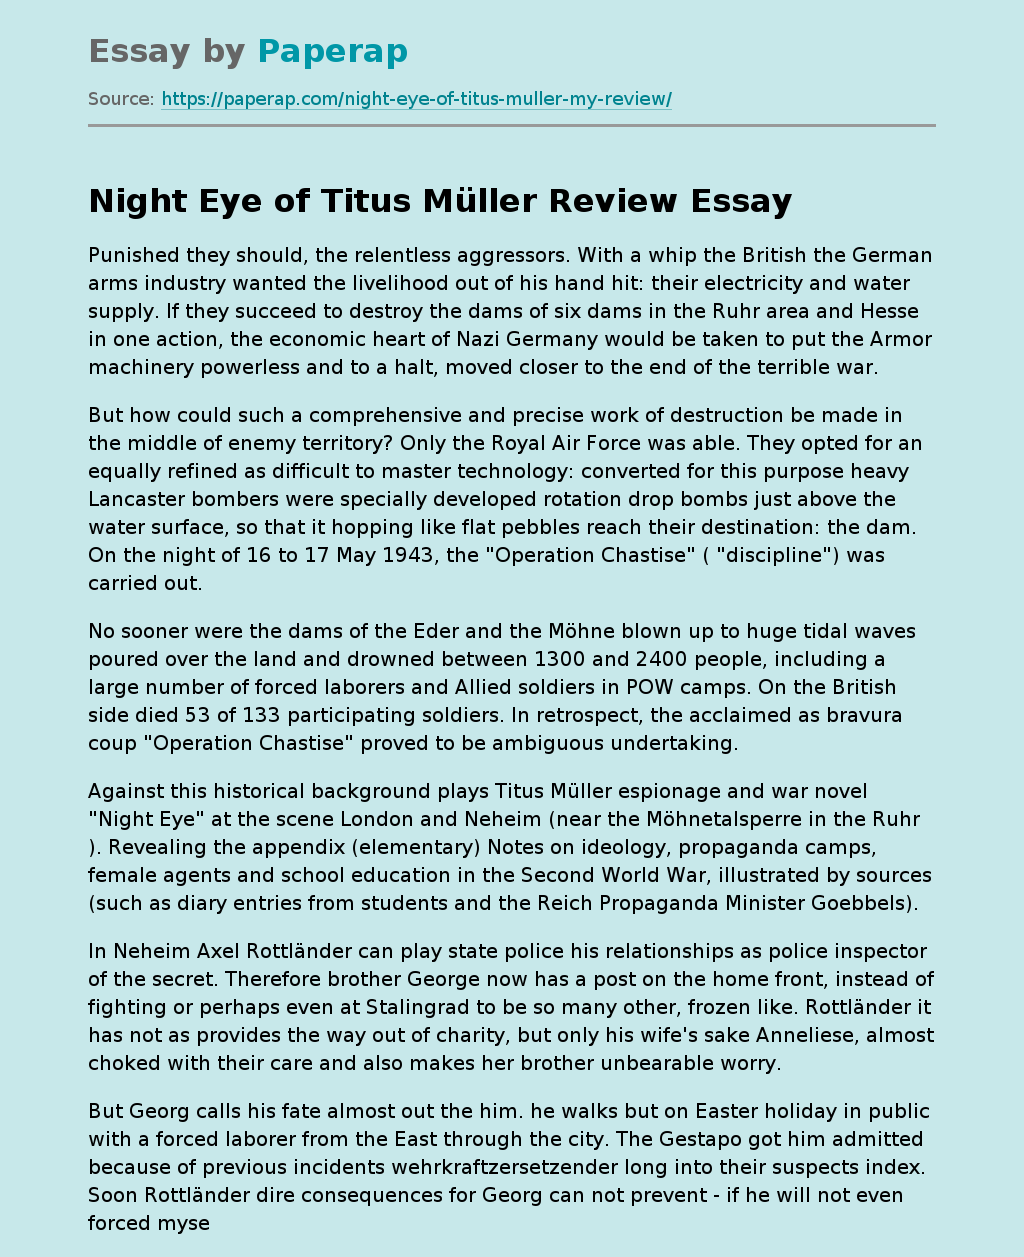 "Night Eye" of Titus Müller